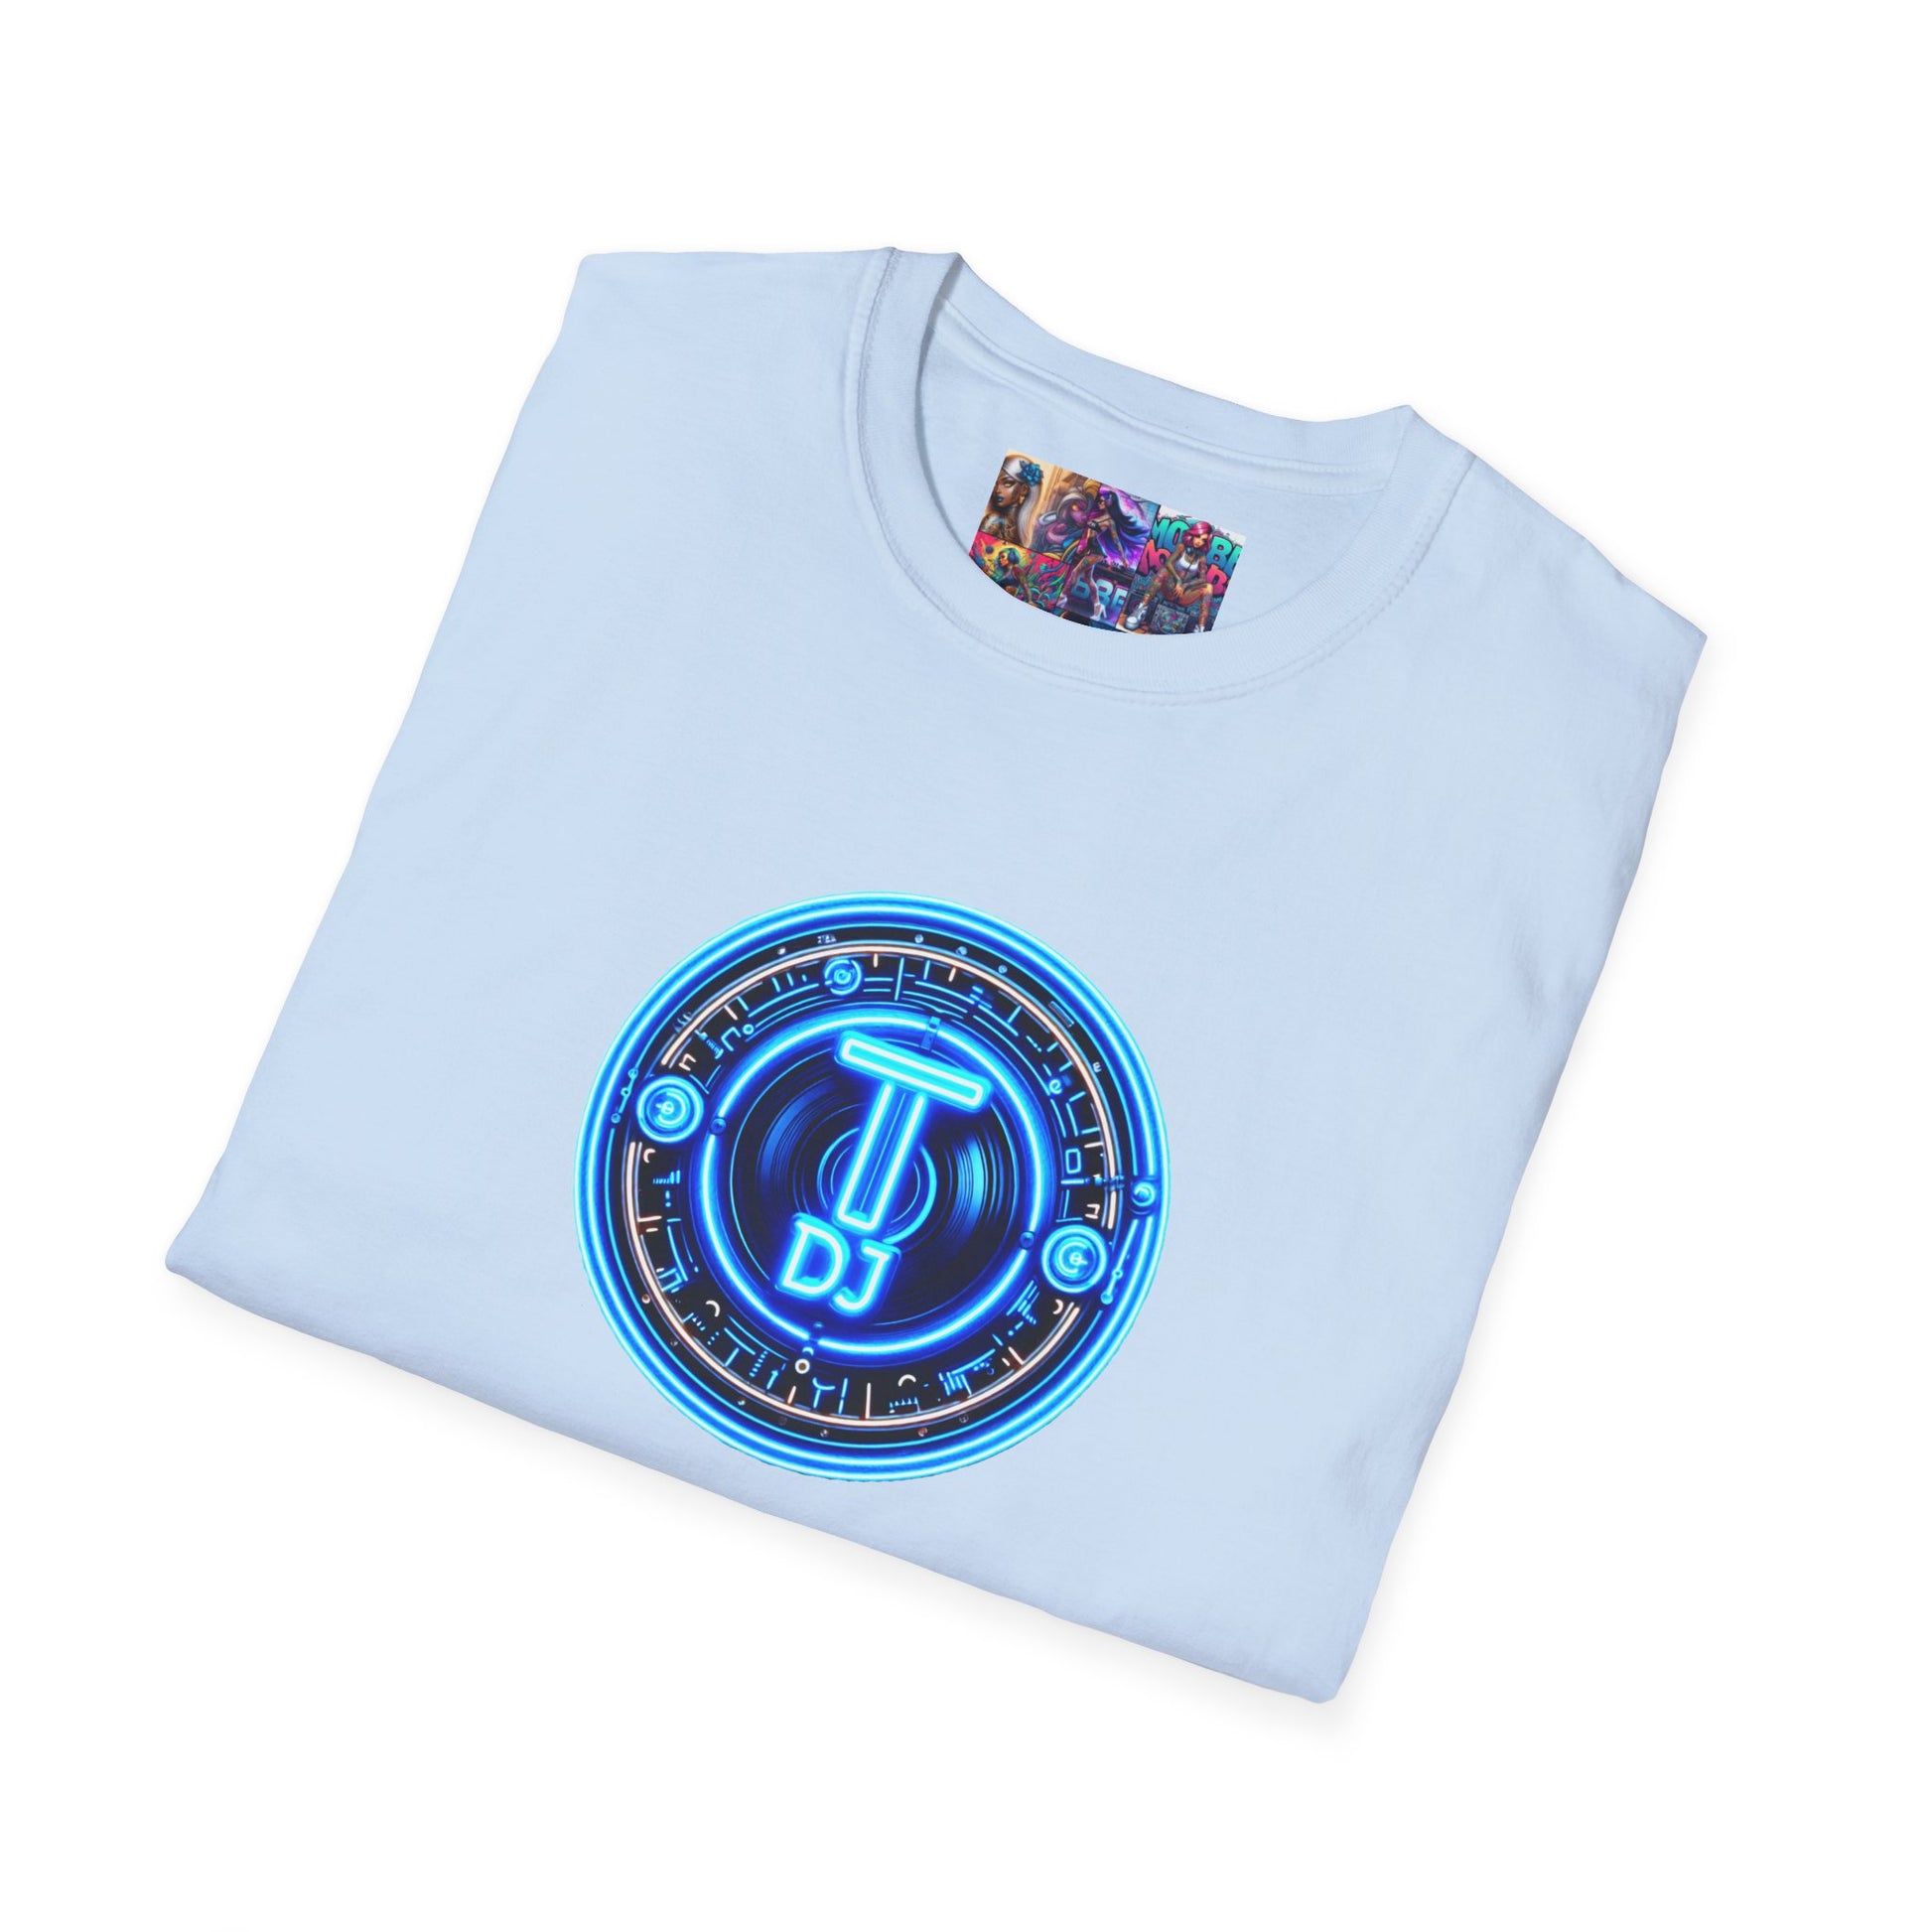 MDBTDJ#1 Unisex Softstyle T-Shirt Tattooed Dj's Limited Edition, T-Shirt, Tattooed Djs Shop